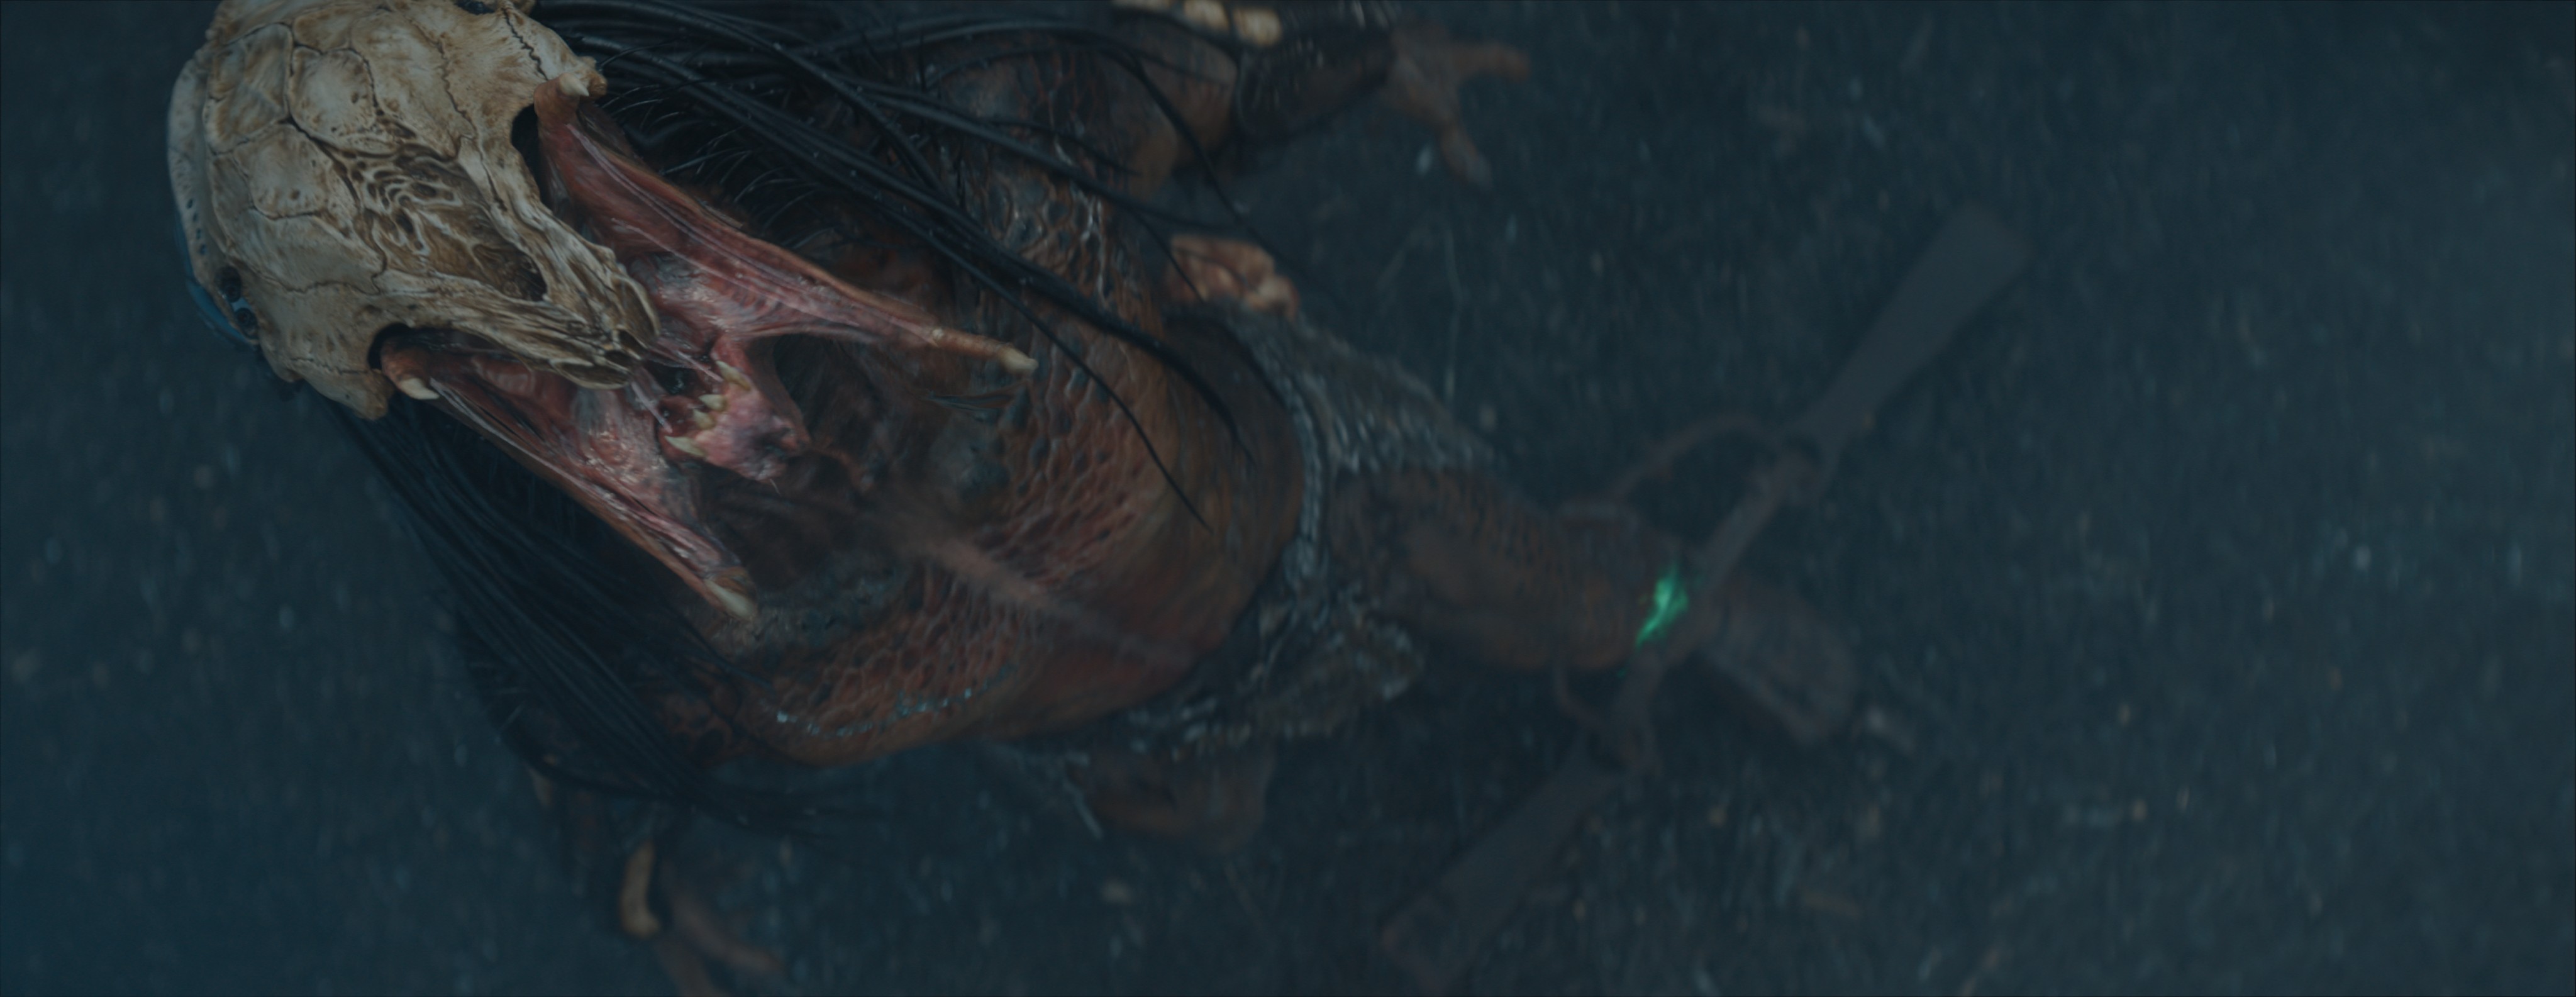 Uma tomada aérea do Predator rugindo do filme Prey, após a aplicação dos efeitos visuais.